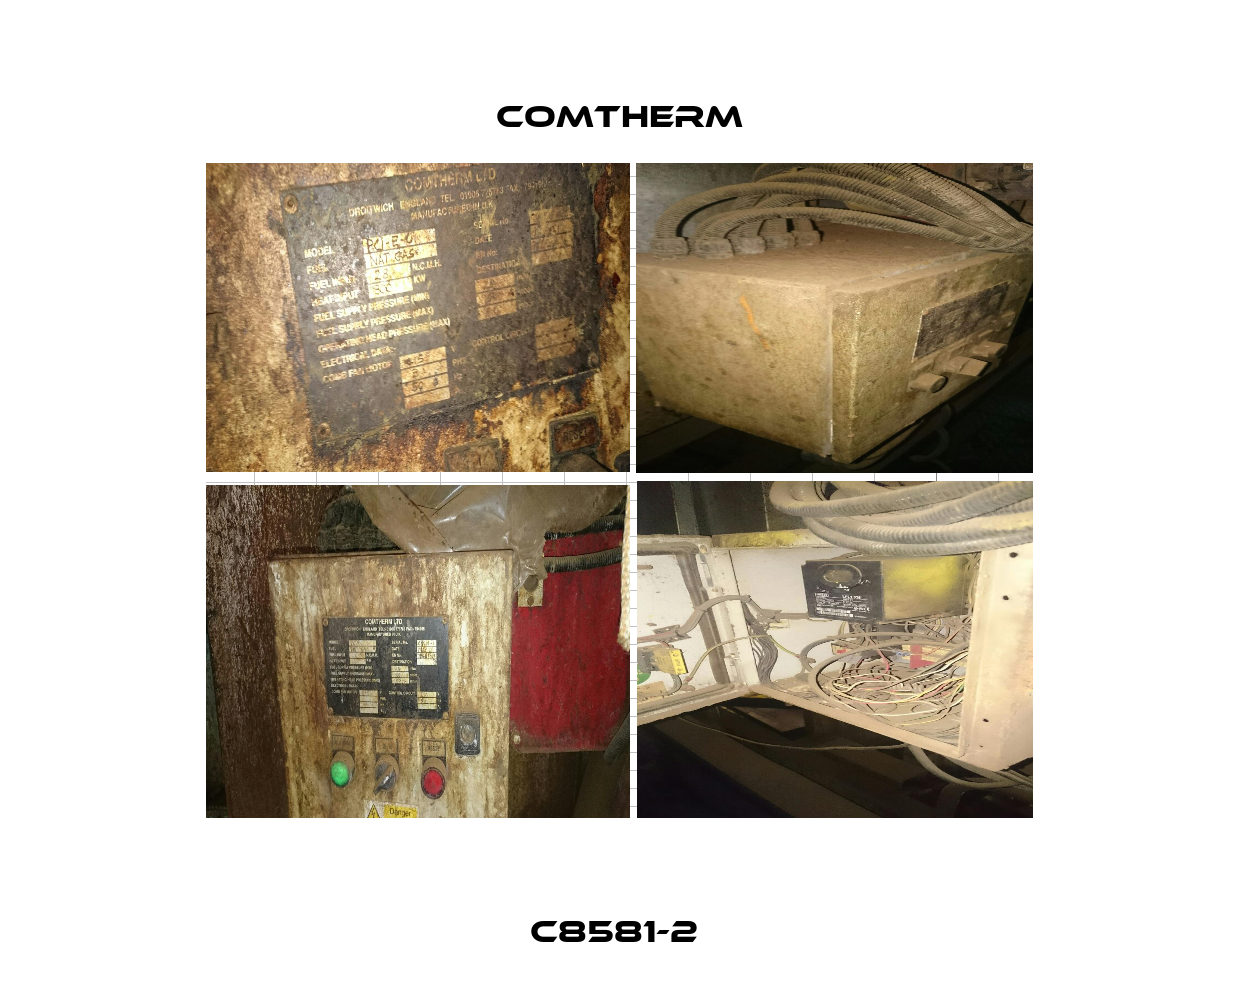 C8581-2  Comtherm